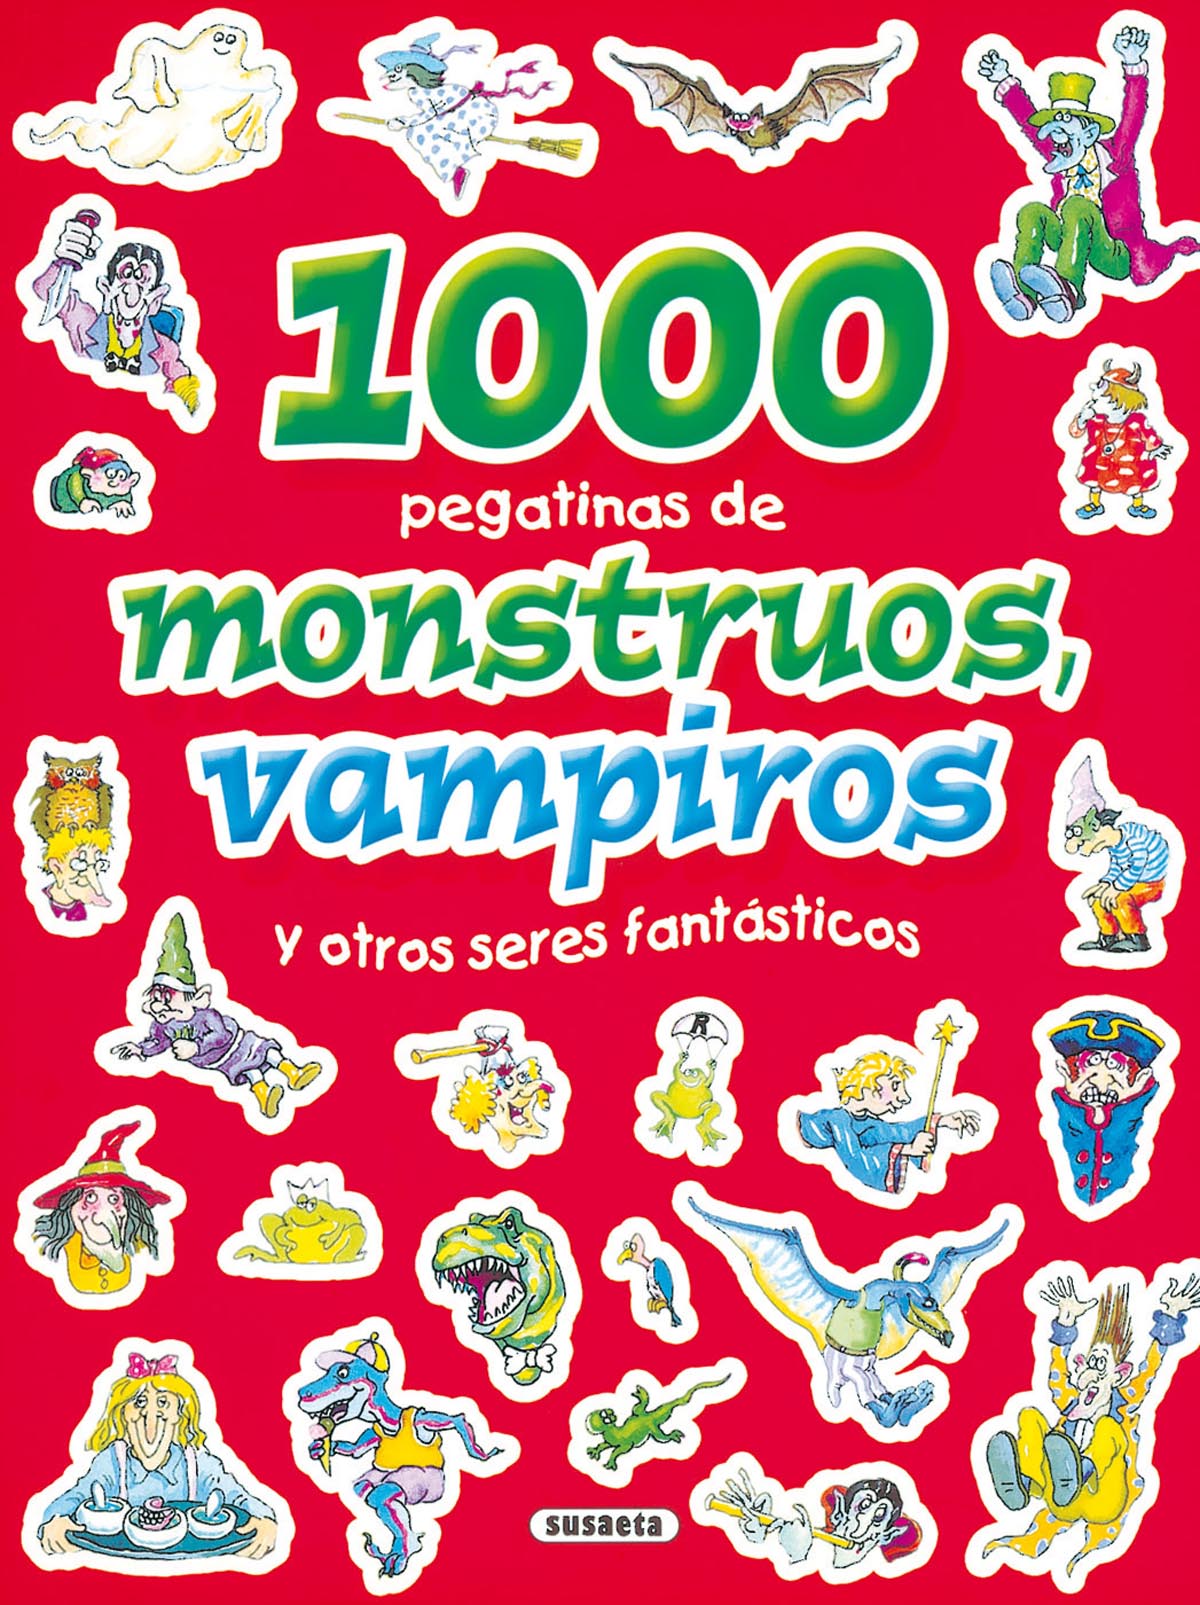 1.000 pegatinas de monstruos, vampiros y otros seres fantsticos